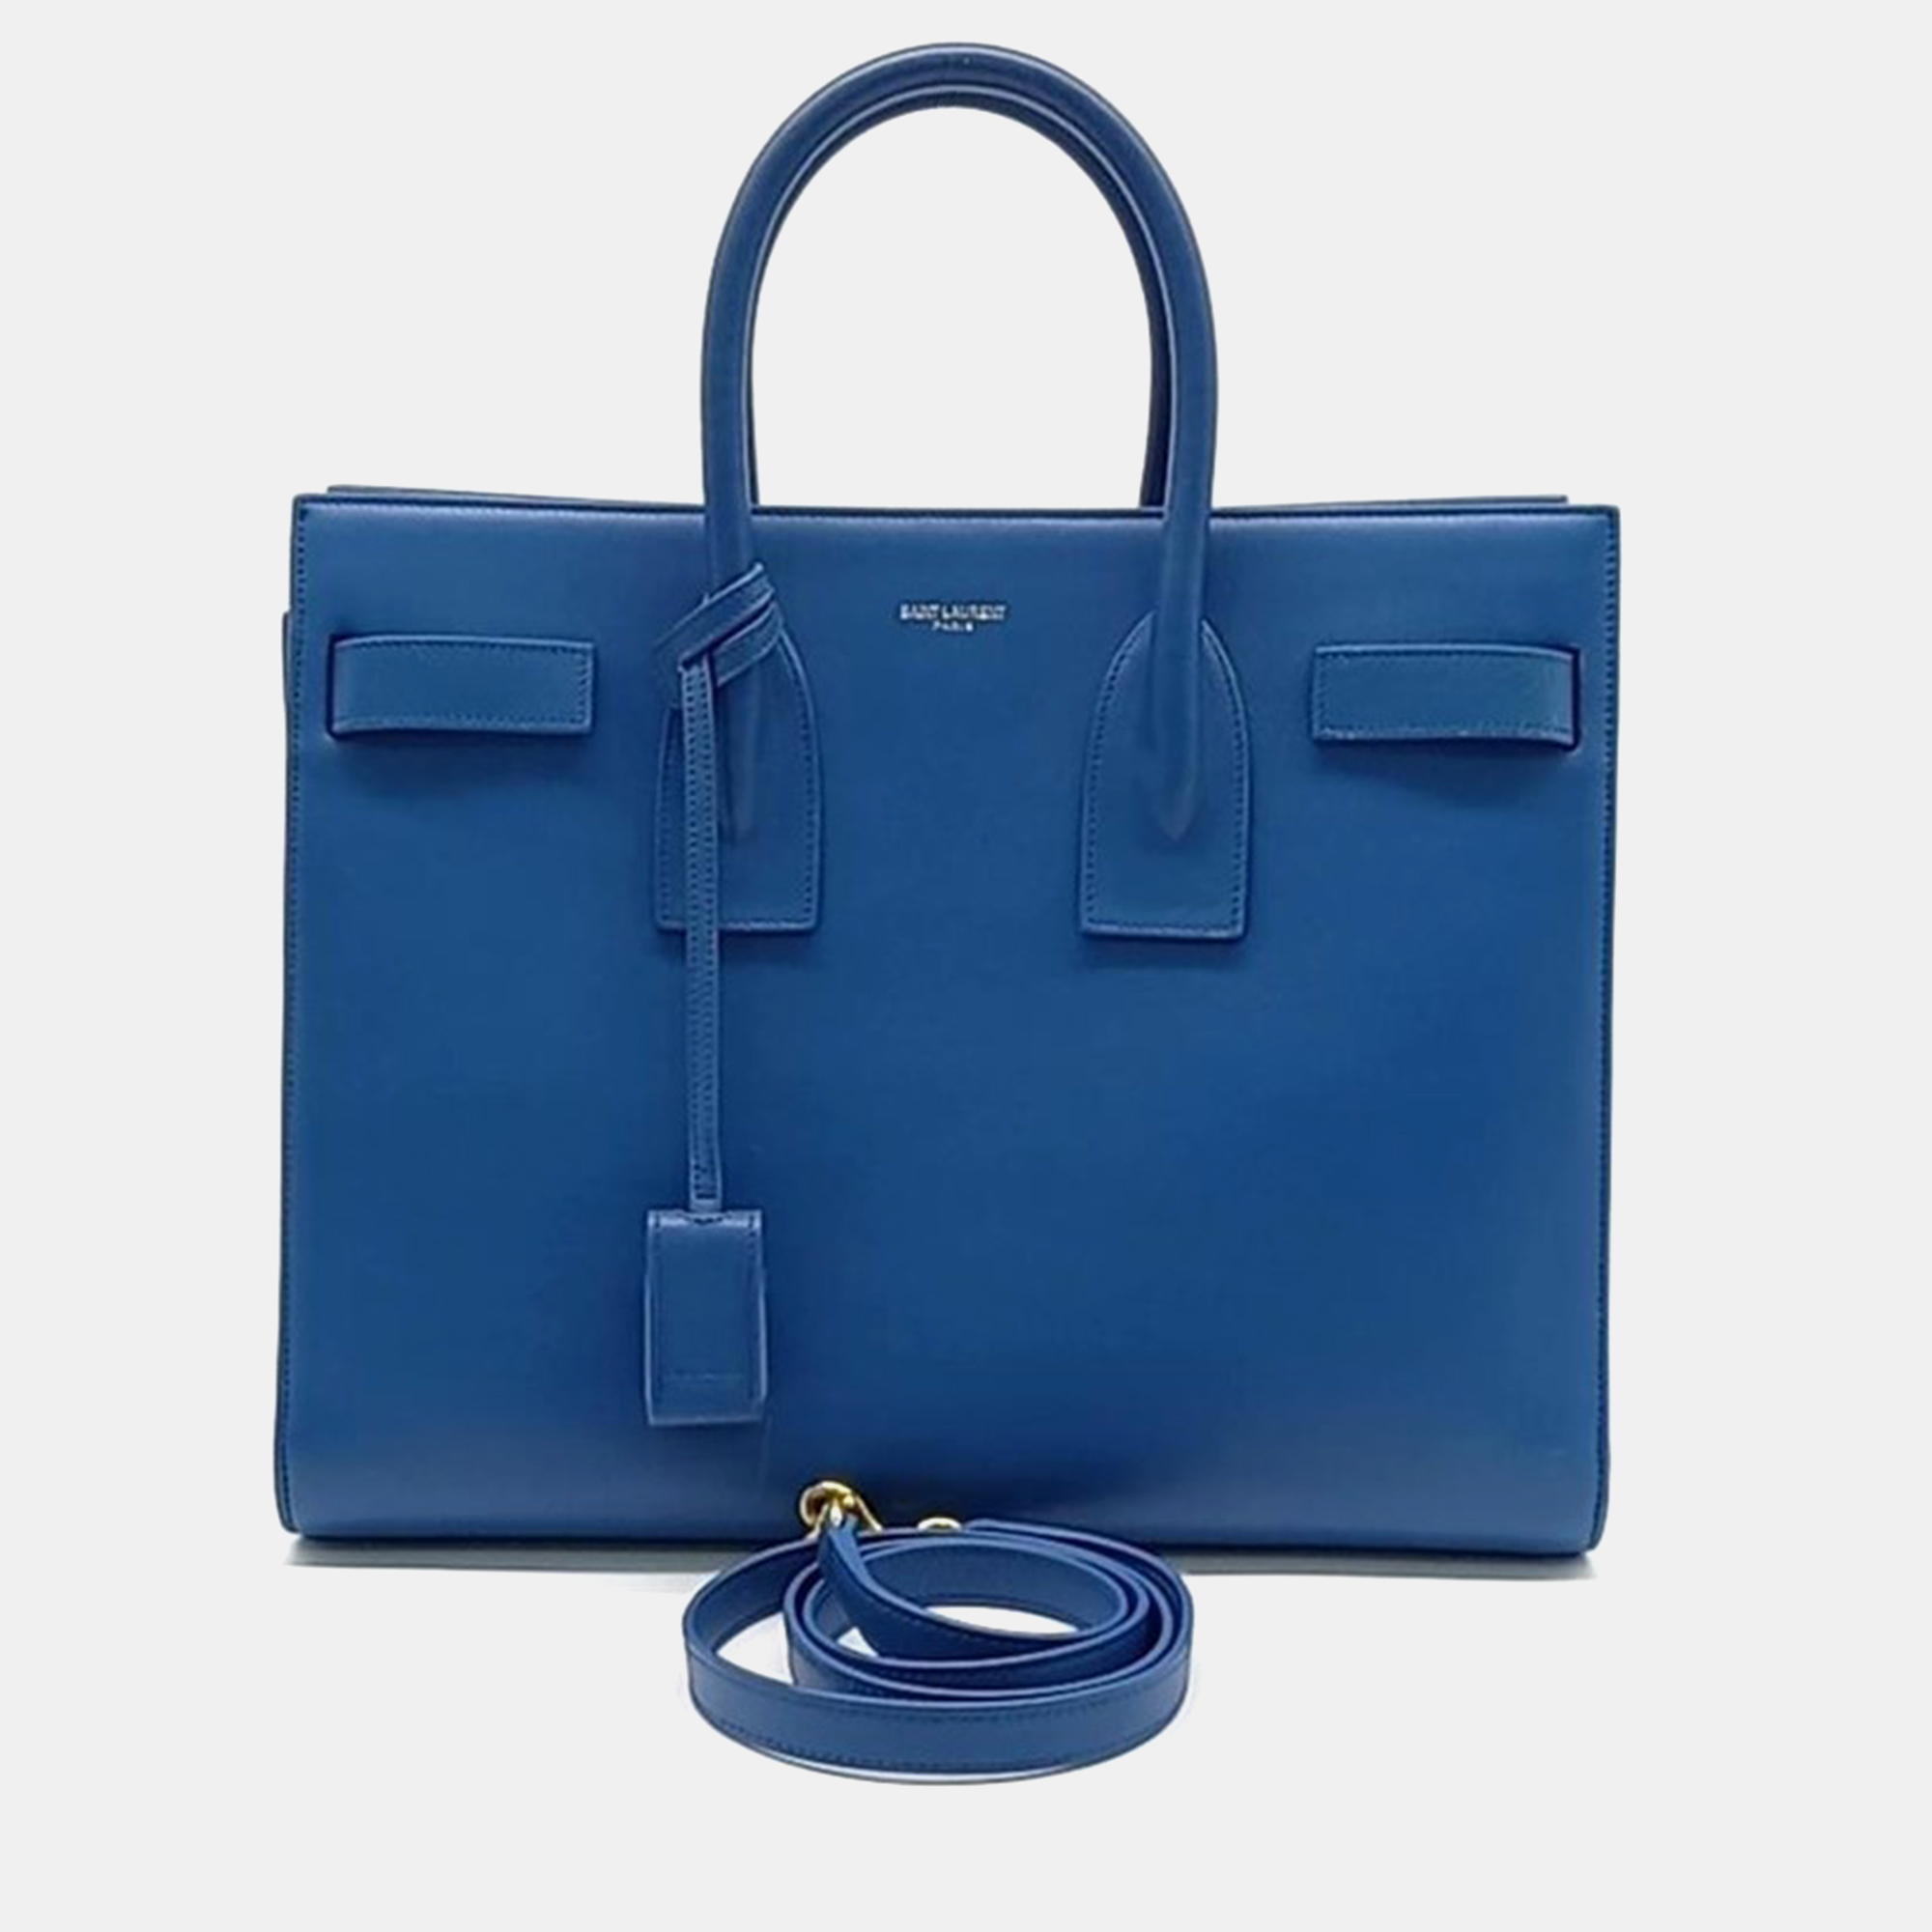 

Saint Laurent Sac De Jour Small Bag, Blue